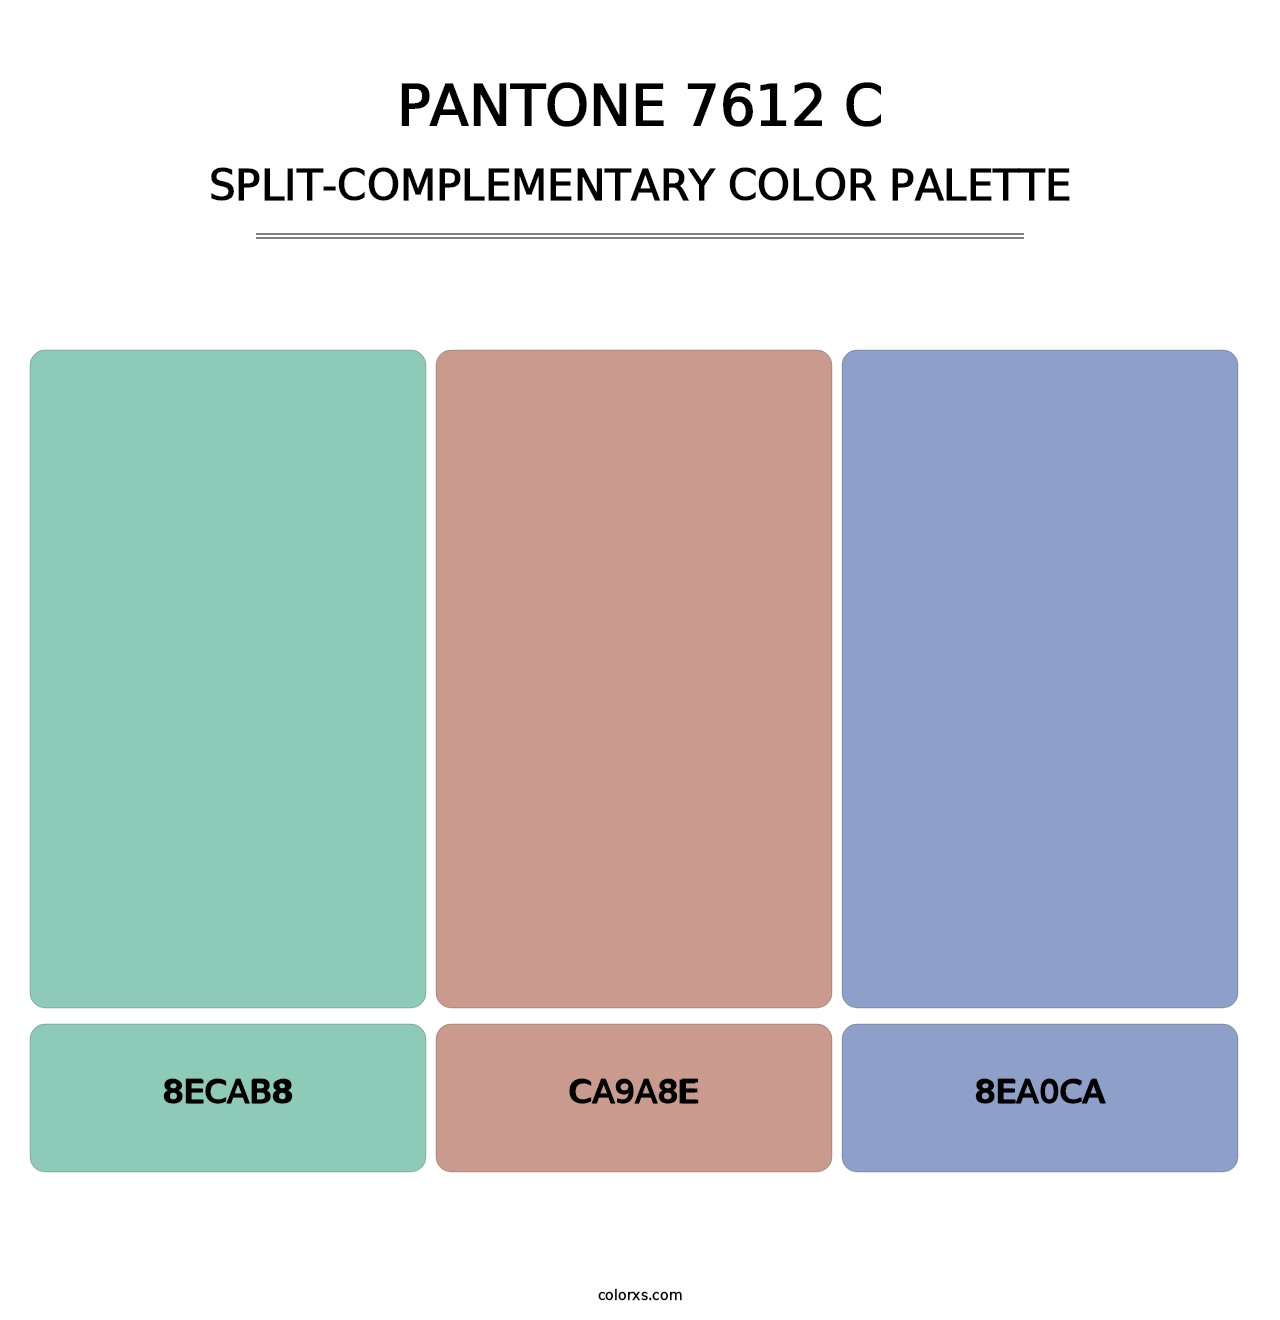 PANTONE 7612 C - Split-Complementary Color Palette